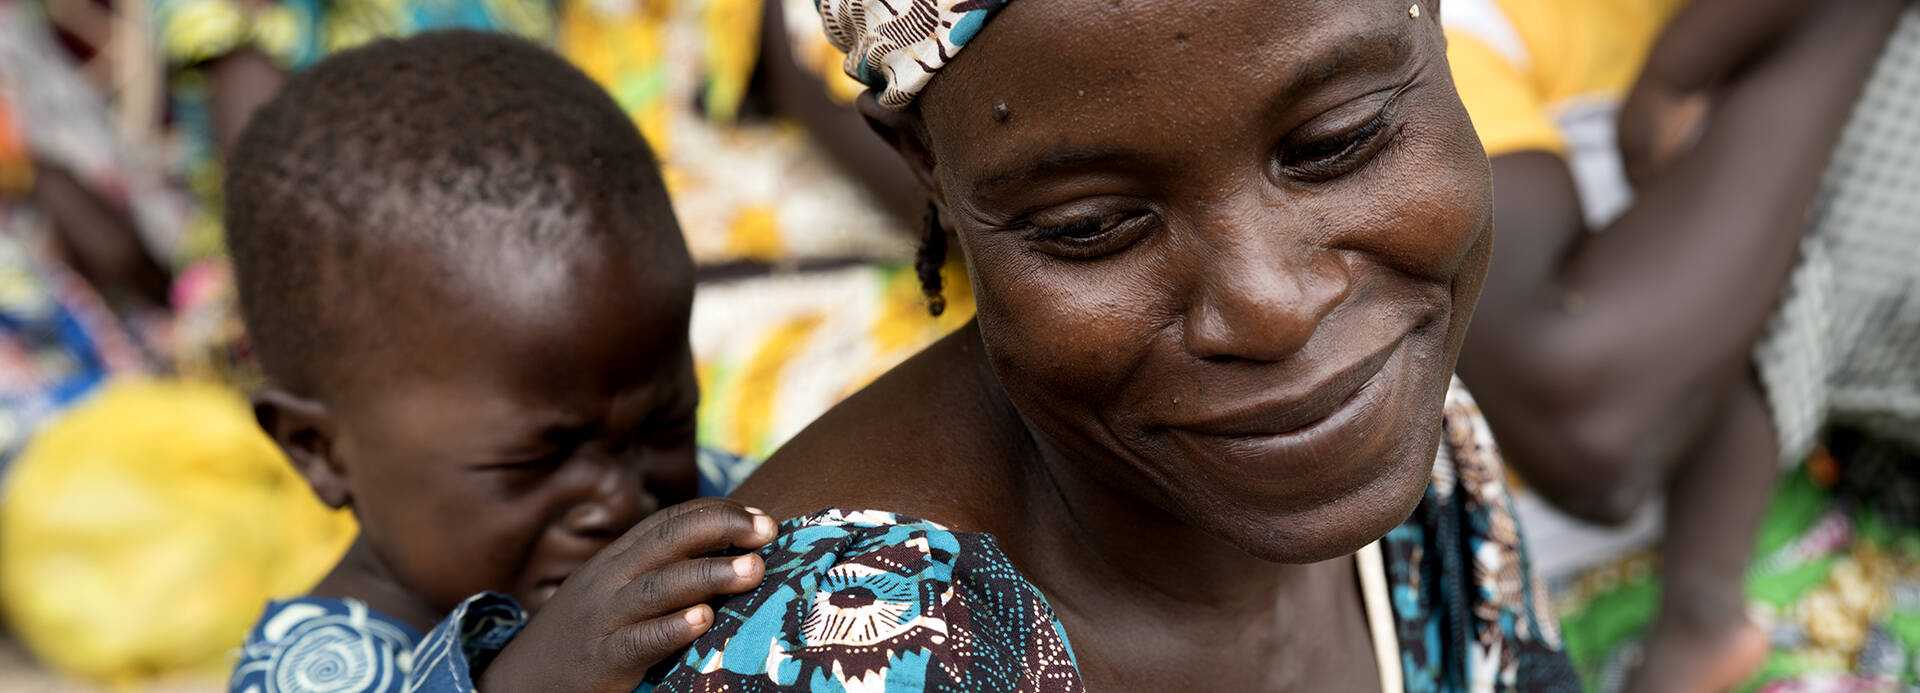 Frau trägt im Kamerun ihr Kind auf dem Rücken.